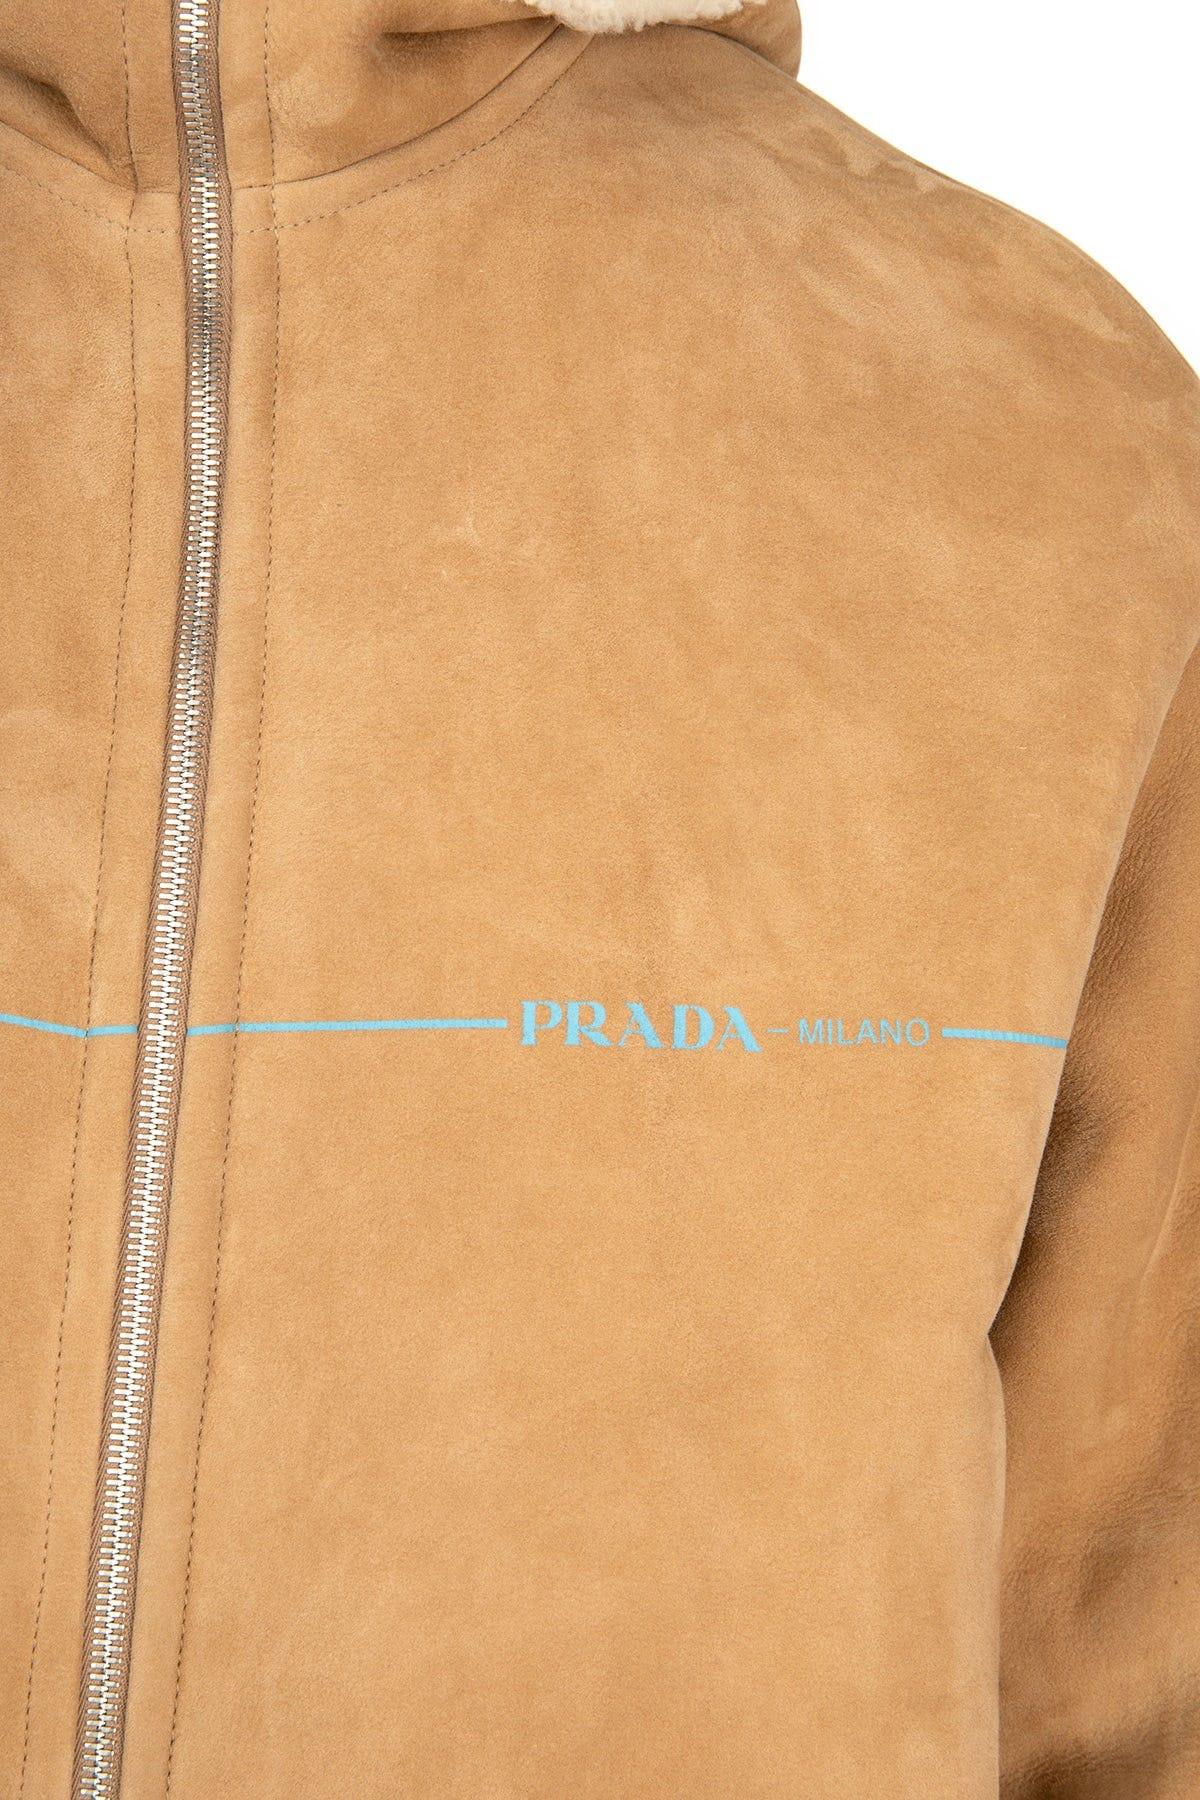 Prada Shearling Brushed Leather Jacket Padded Windbreaker Lining